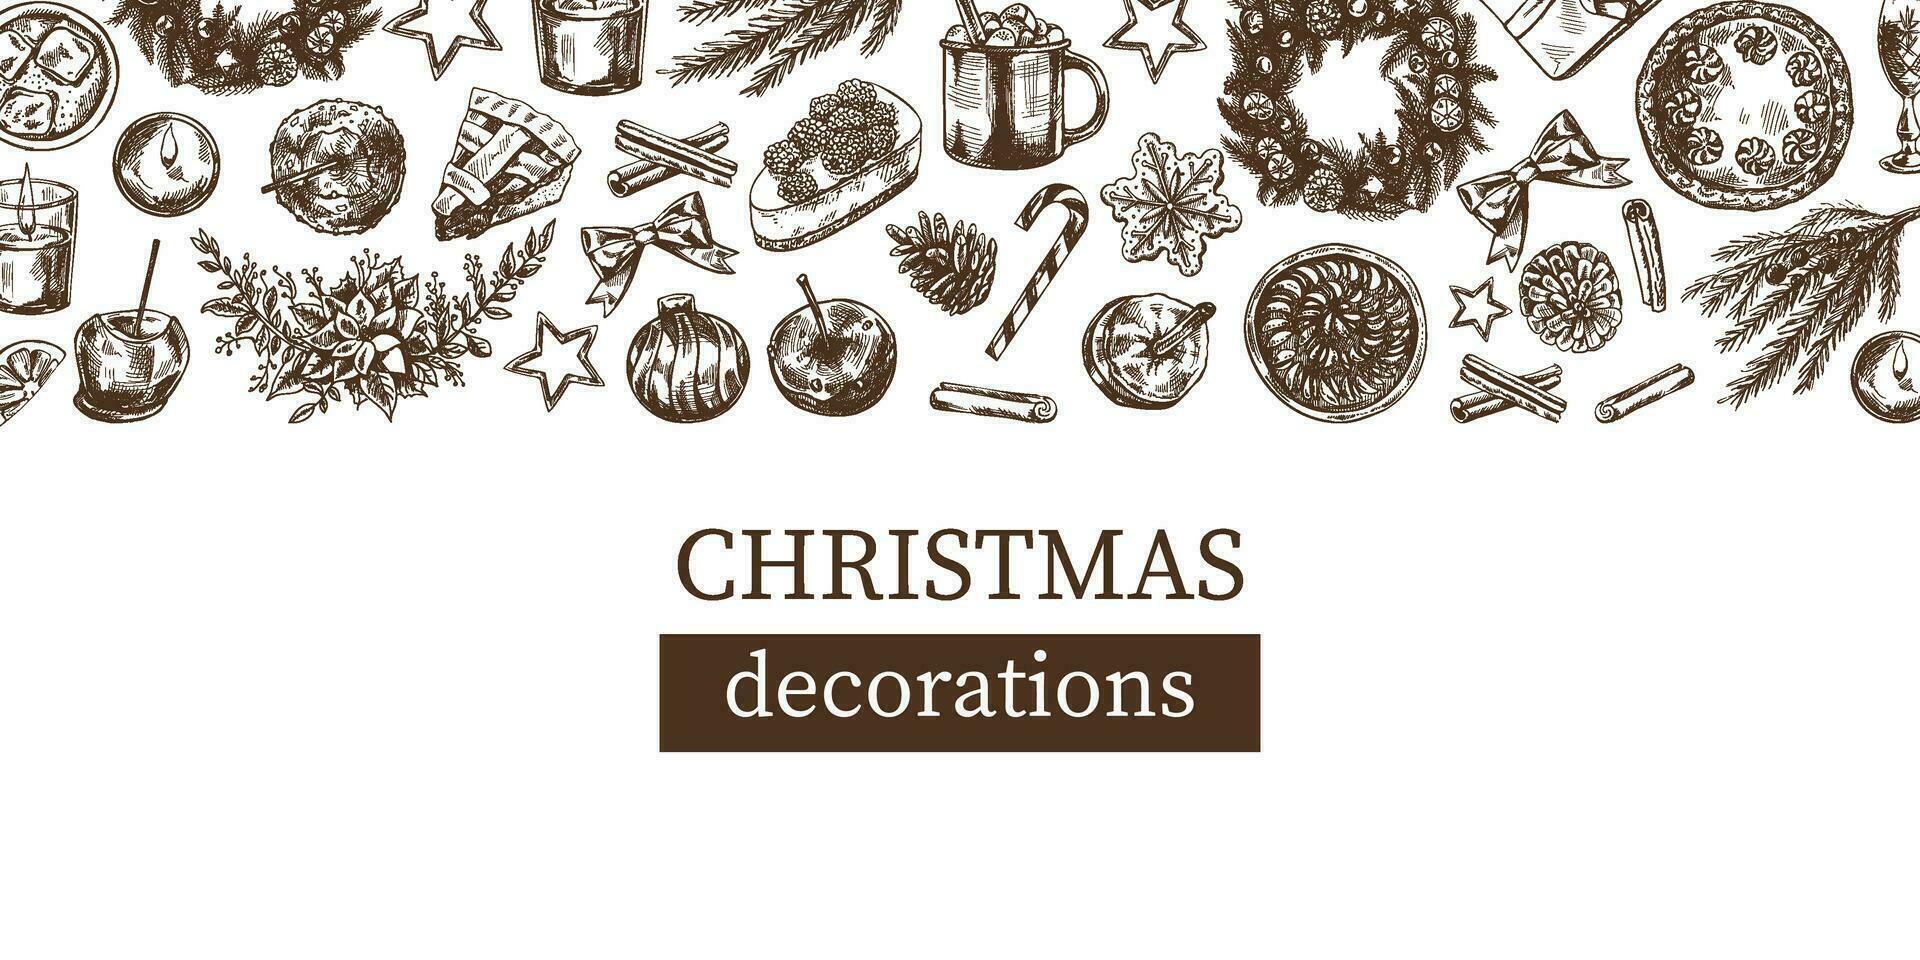 ritad för hand jul mall i skiss stil. festlig dekoration - krans, gåva, sötsaker, mat, jul träd dekor, drycker och kryddor skisser. årgång design med ett tömma Plats. vektor